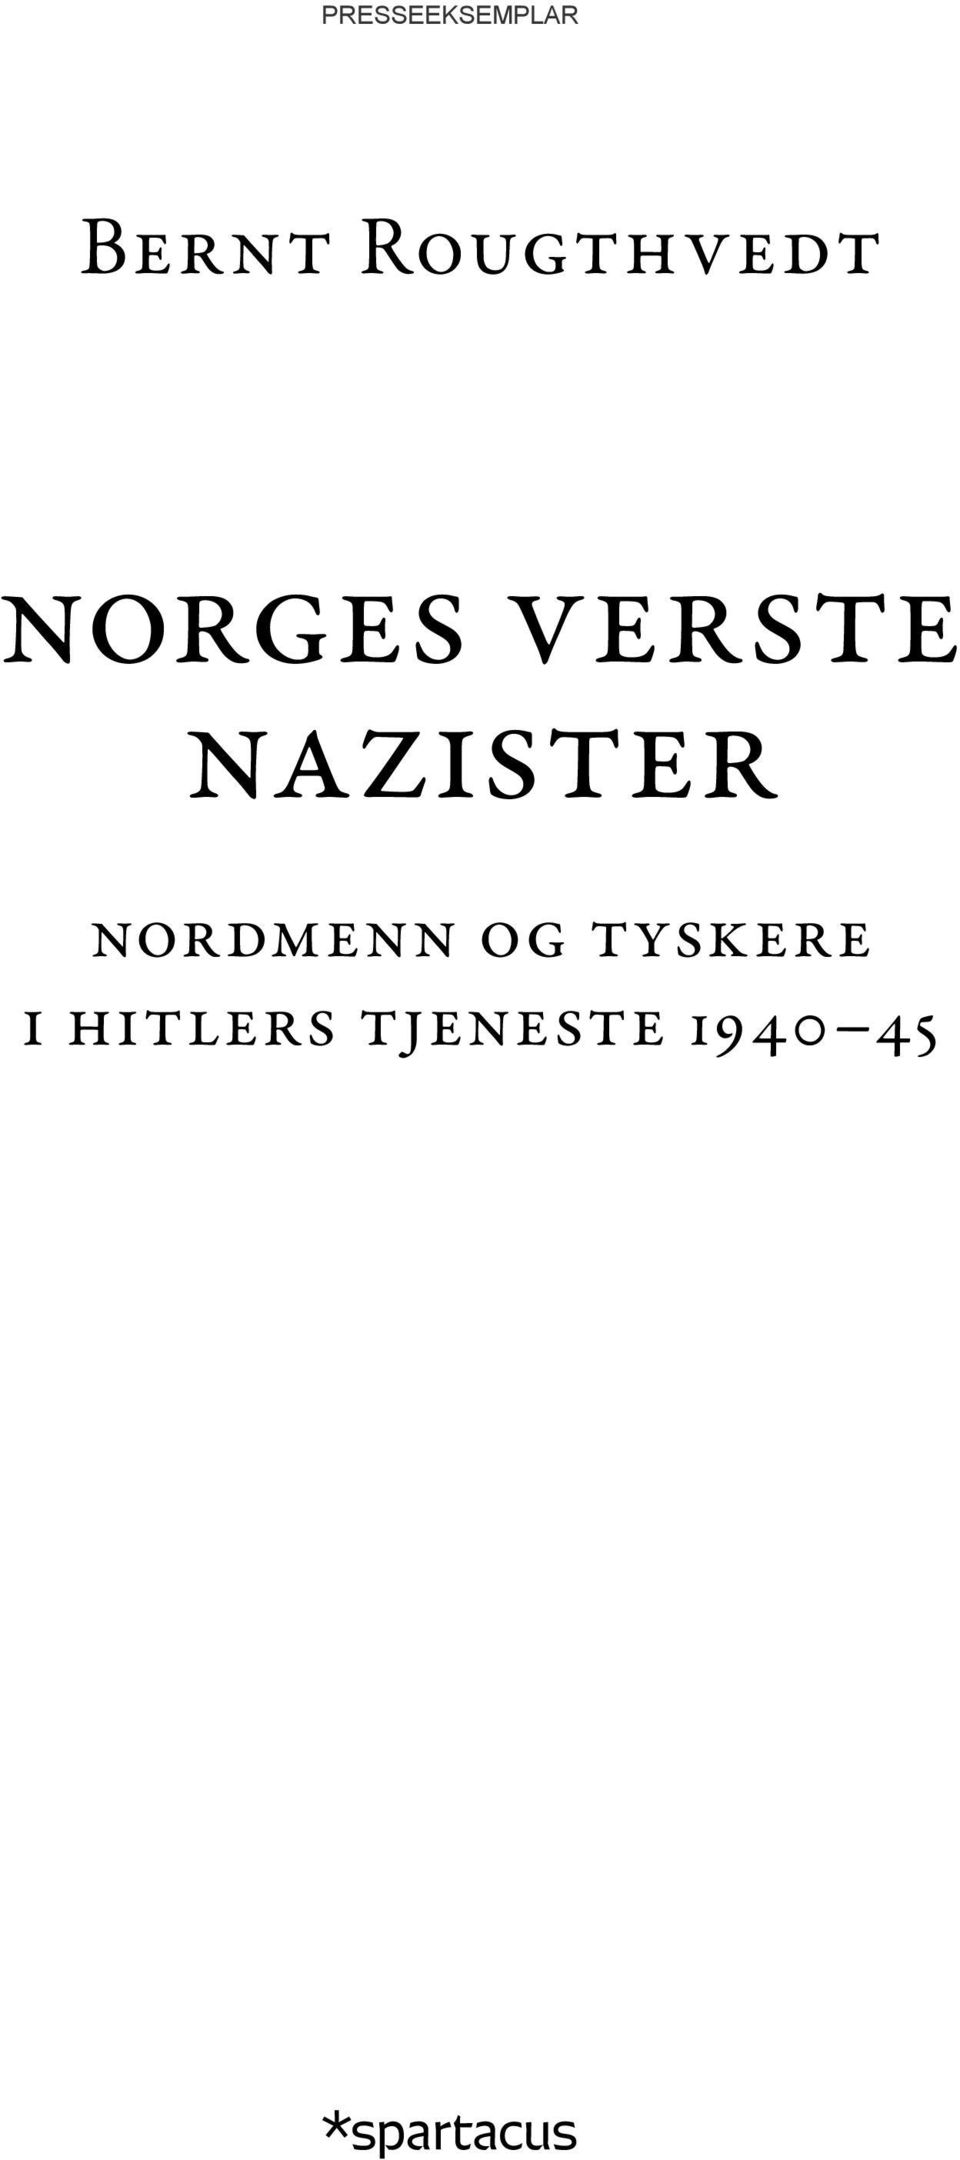 nazister nordmenn og